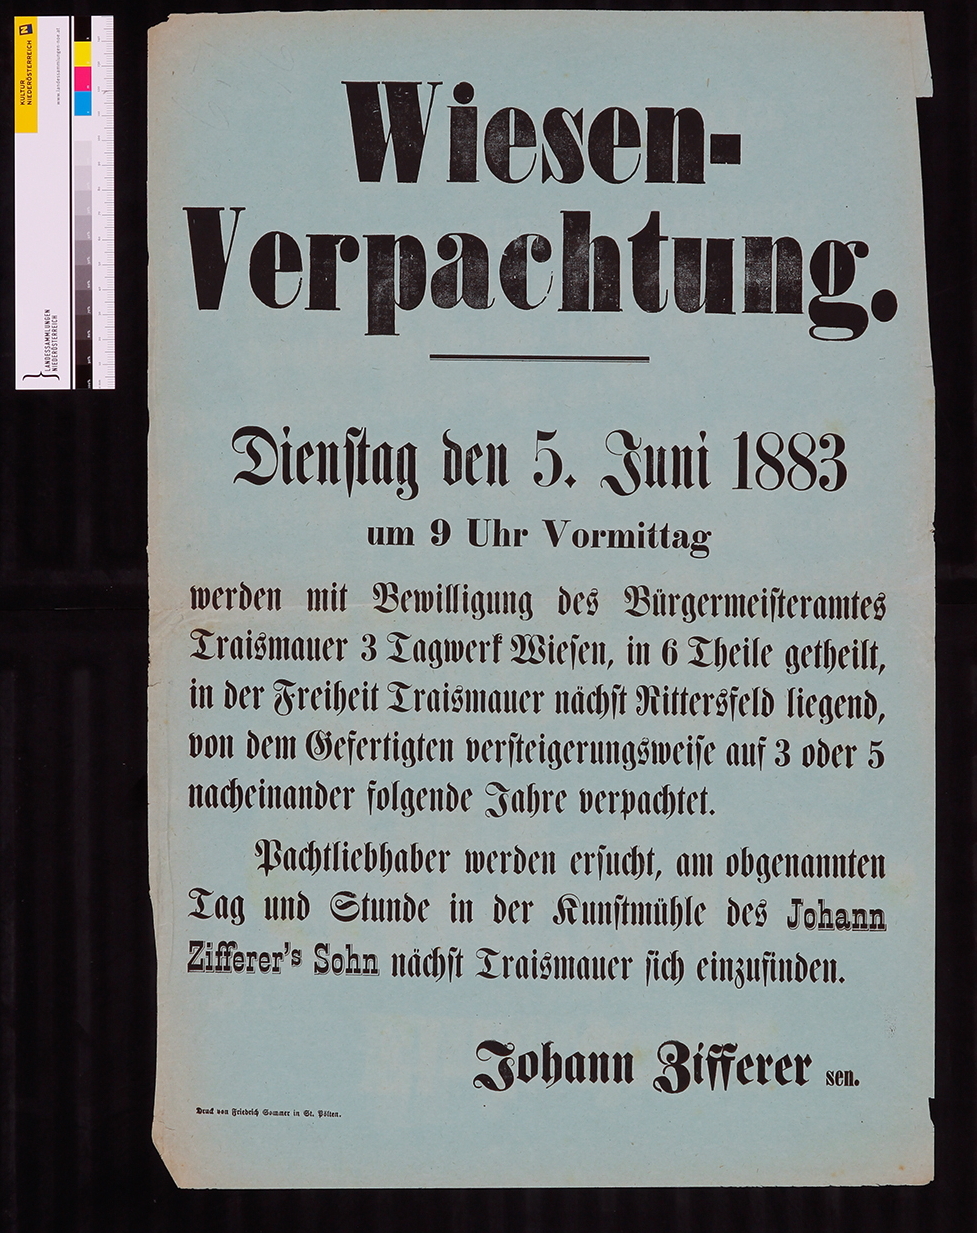 Ankündigung, Wiesenverpachtung Traismauer, Johann Zifferer, 5. Juni 1883.